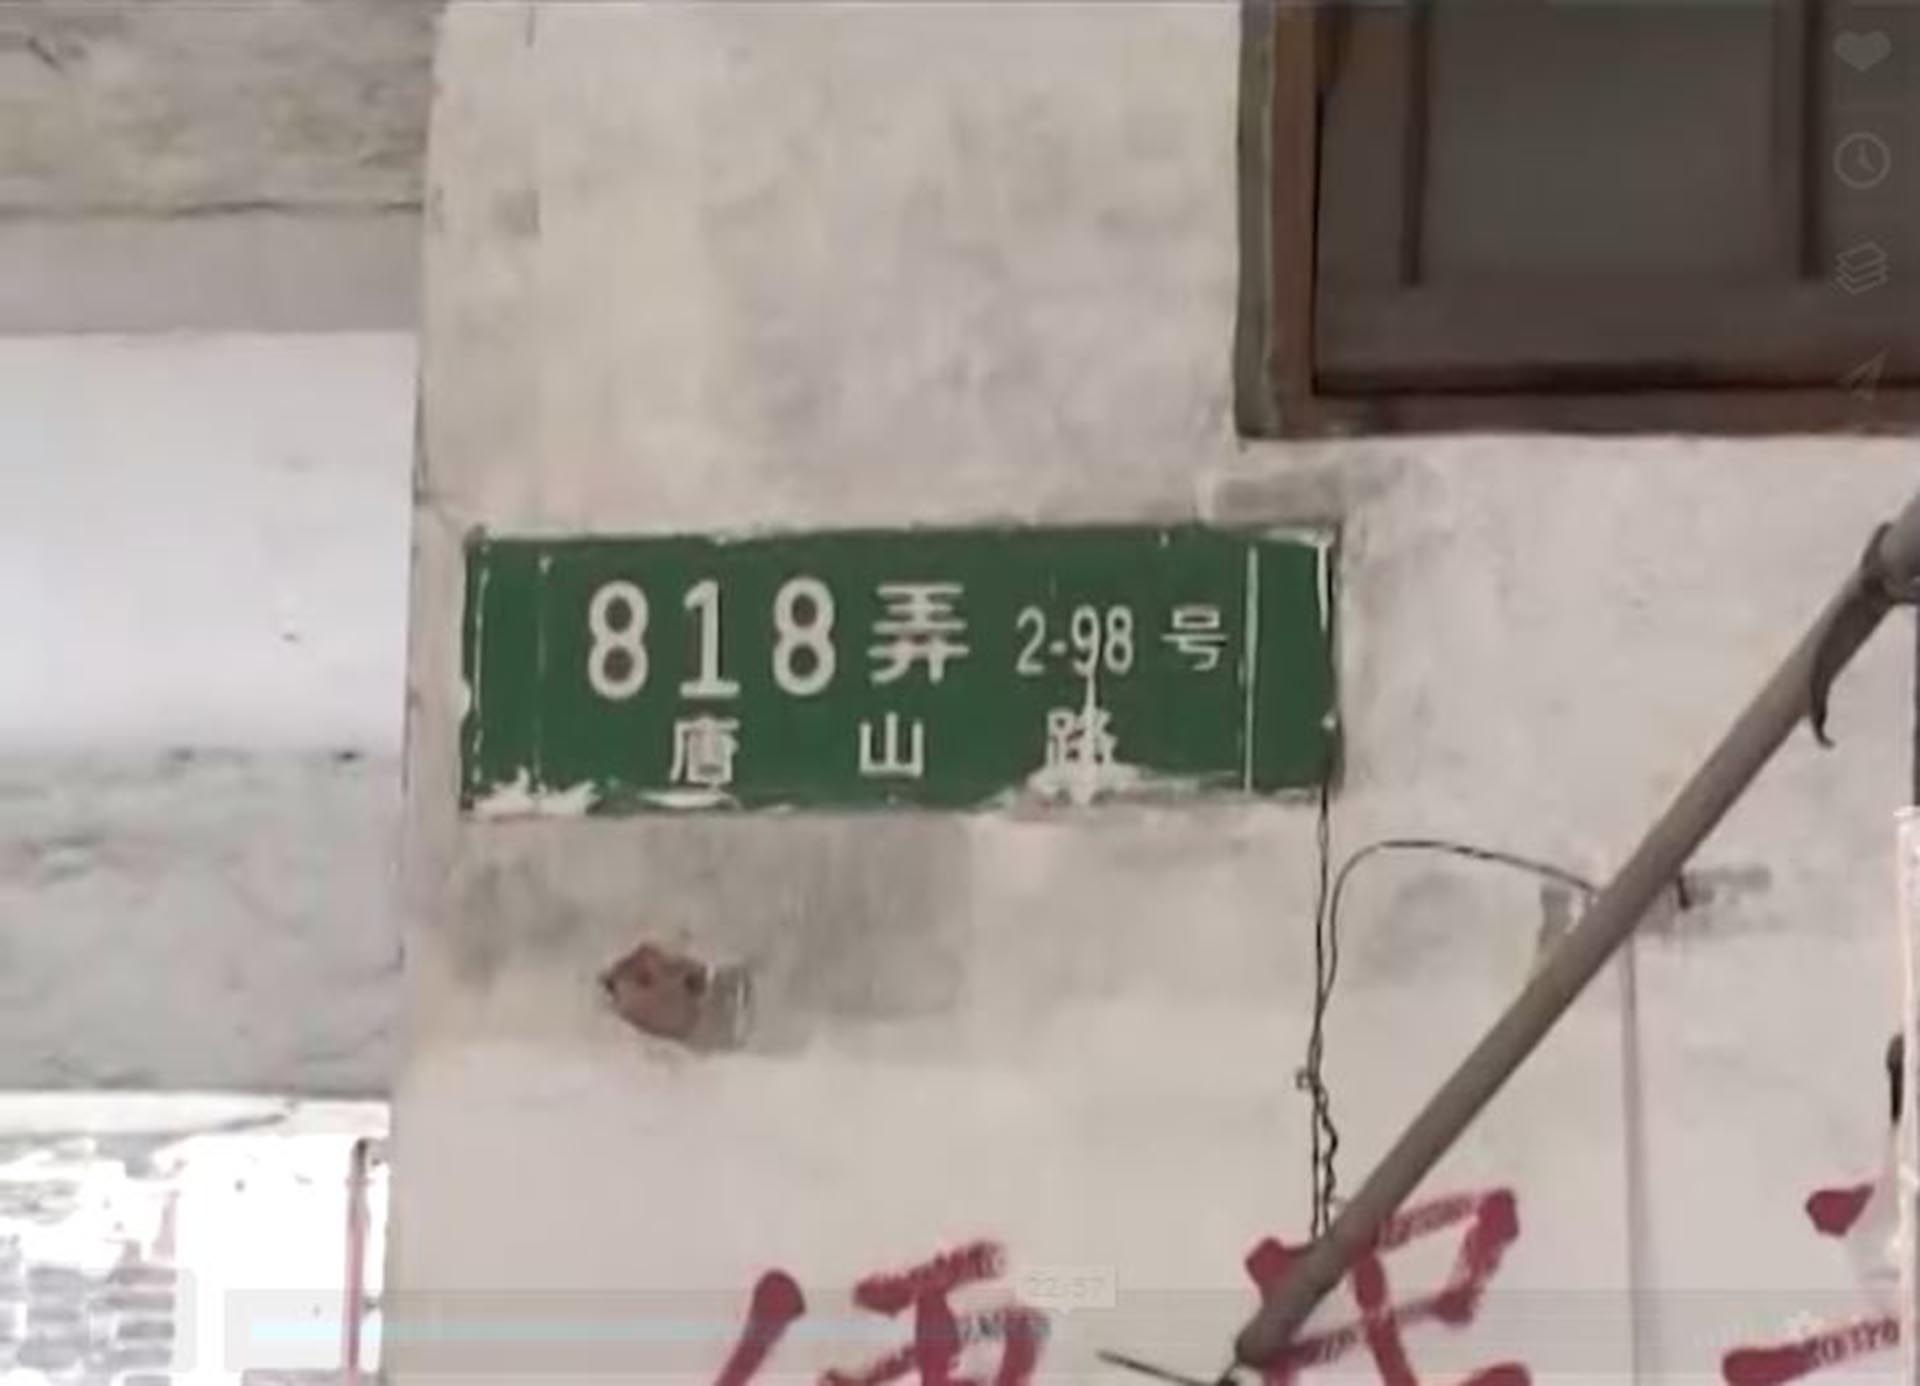 La dirección del condominio donde vivía dentro del Gueto de Shanghai (captura de Tongshan Road 818)